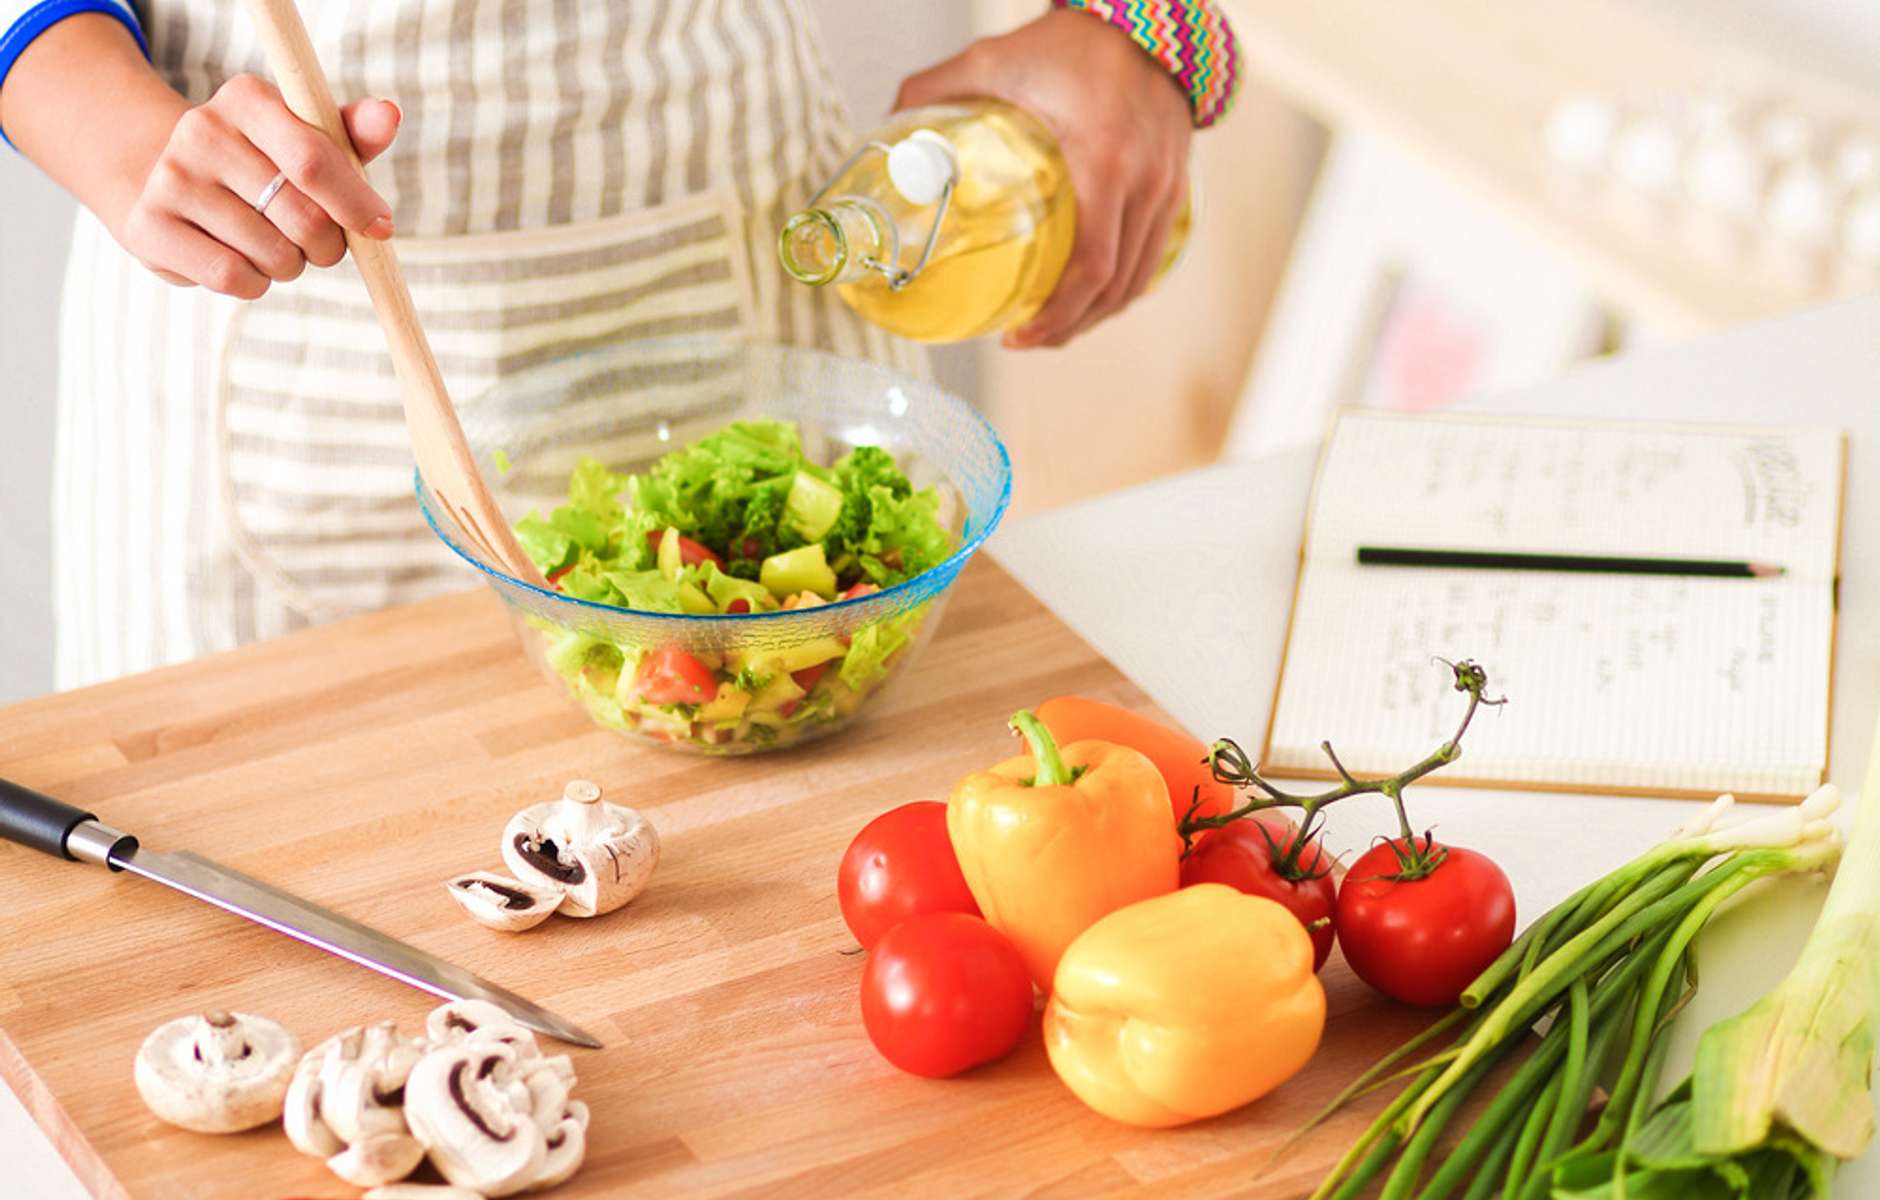 Зожник |   10 фудхаков: простейшие приемы, чтобы сэкономить время на кухне и улучшить здоровье